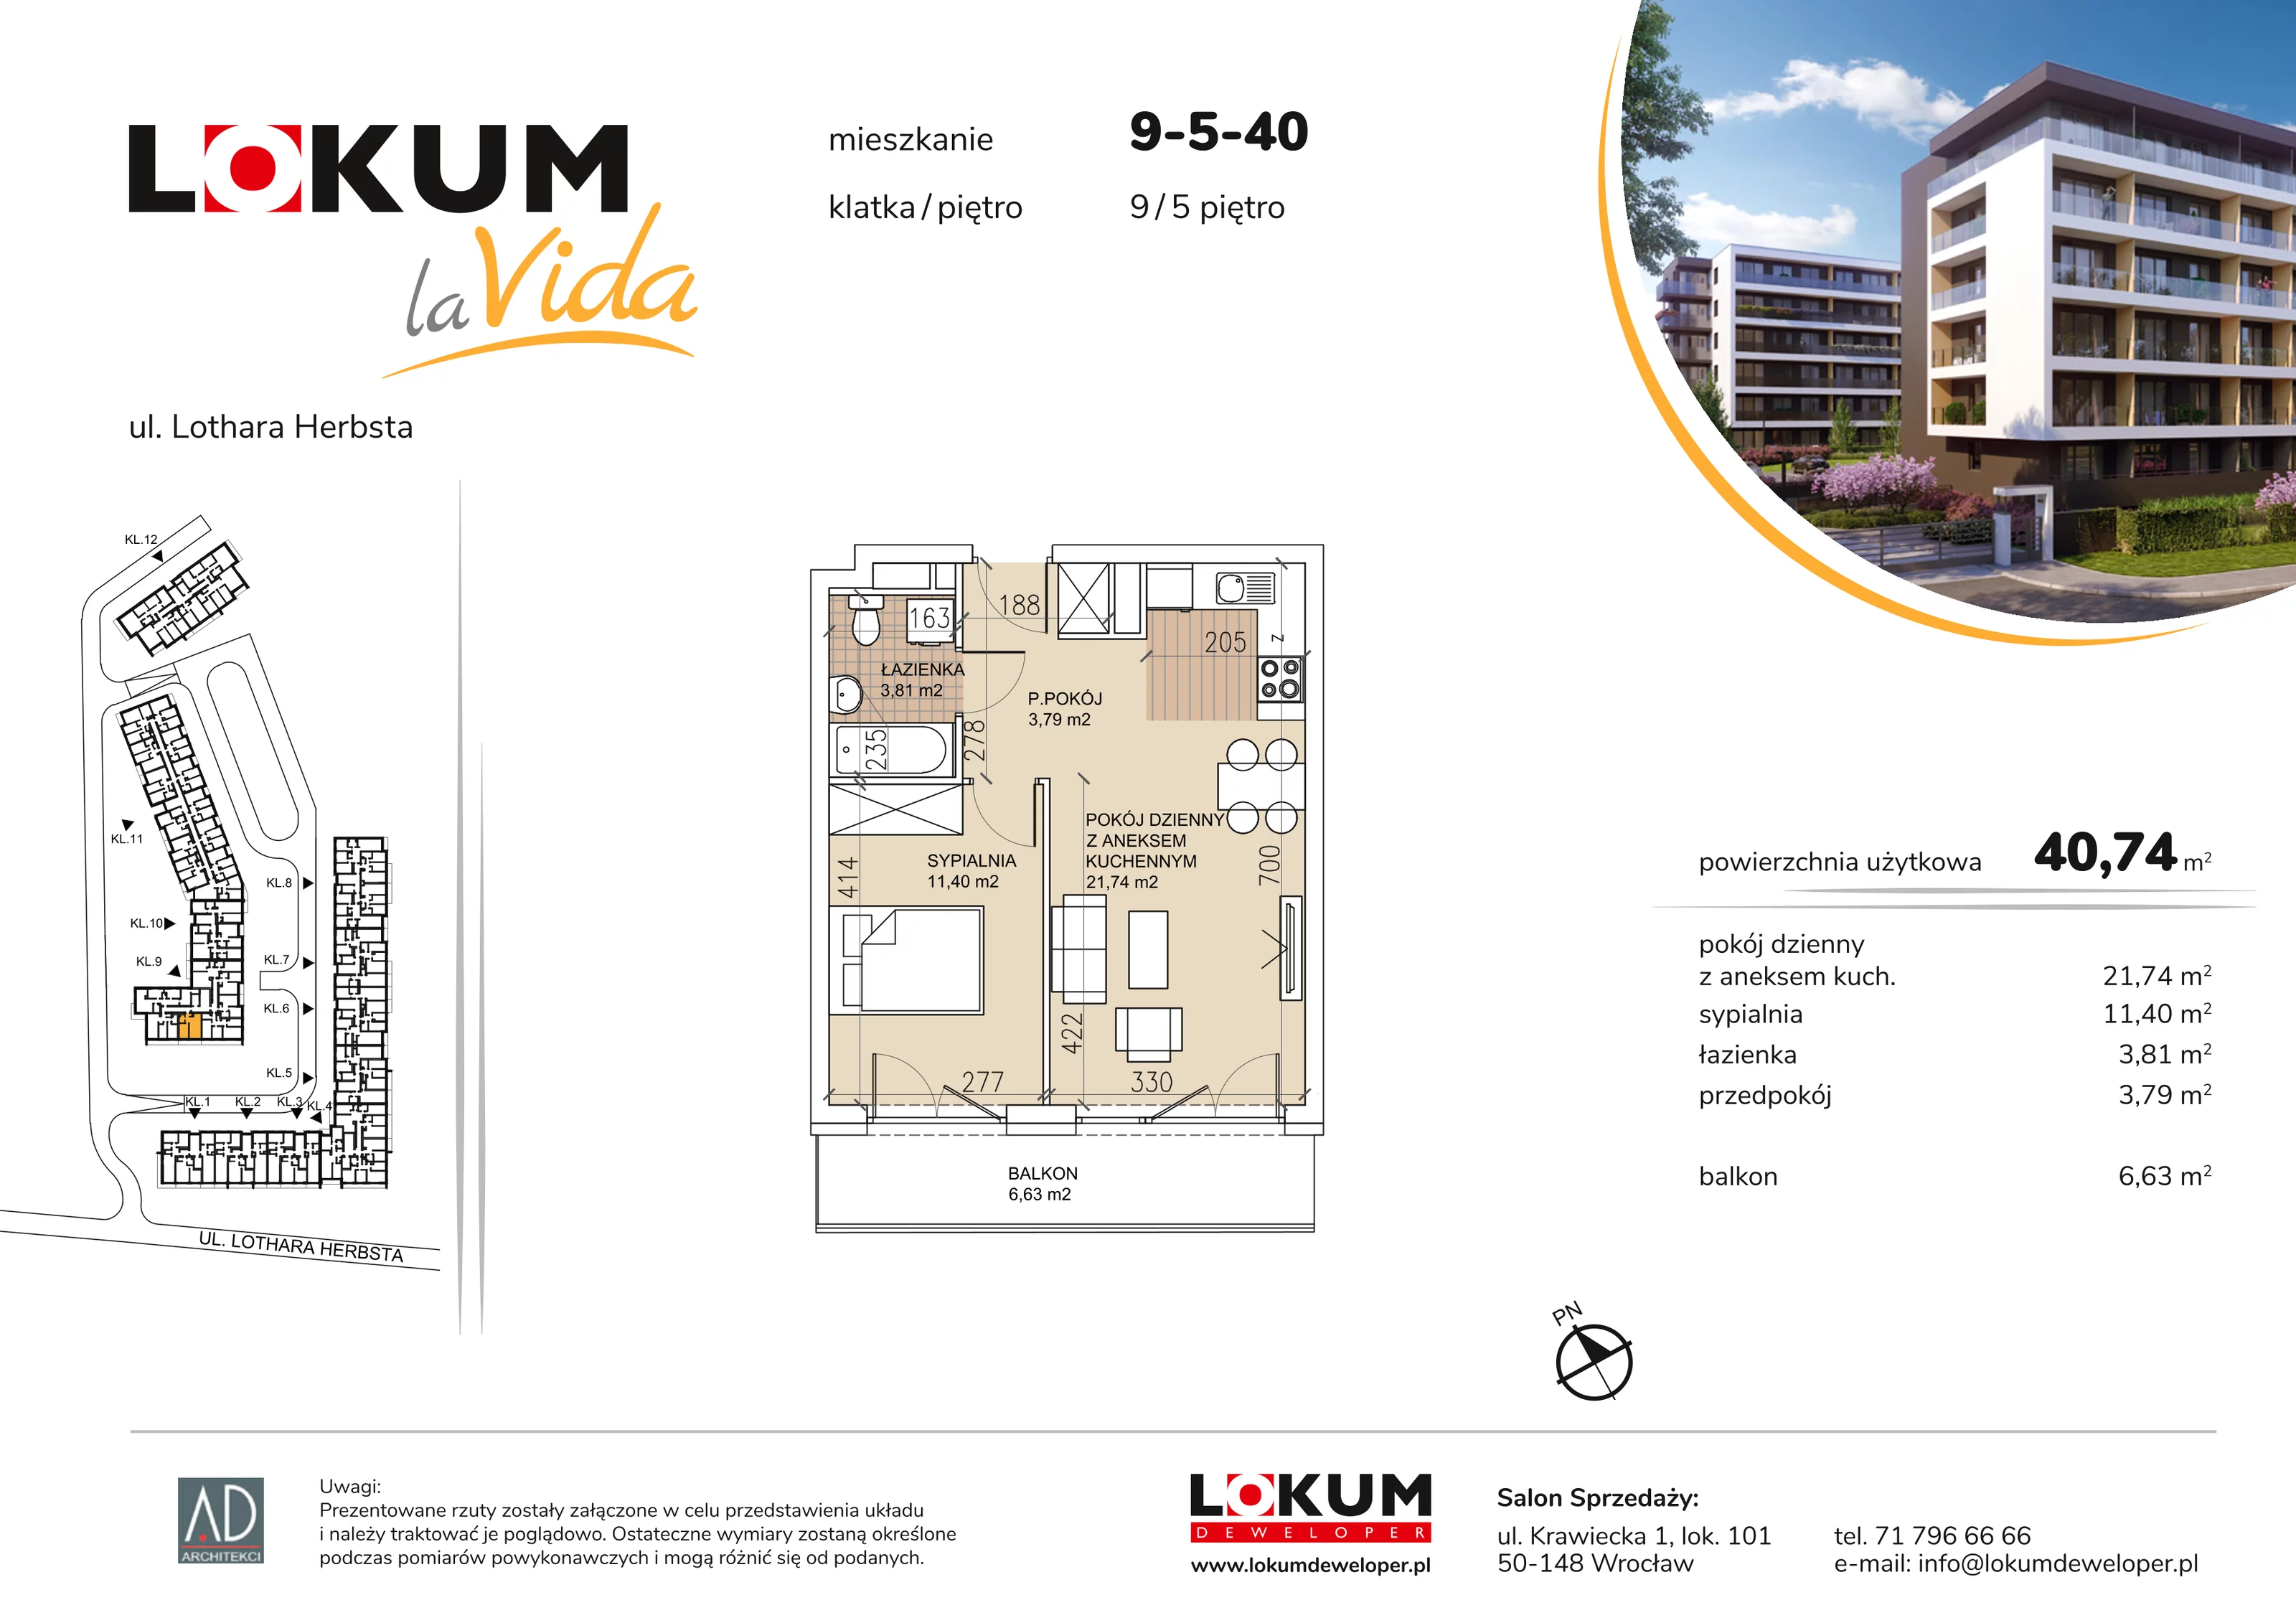 Mieszkanie 40,74 m², piętro 5, oferta nr 9-5-40, Lokum la Vida, Wrocław, Sołtysowice, ul. Lothara Herbsta